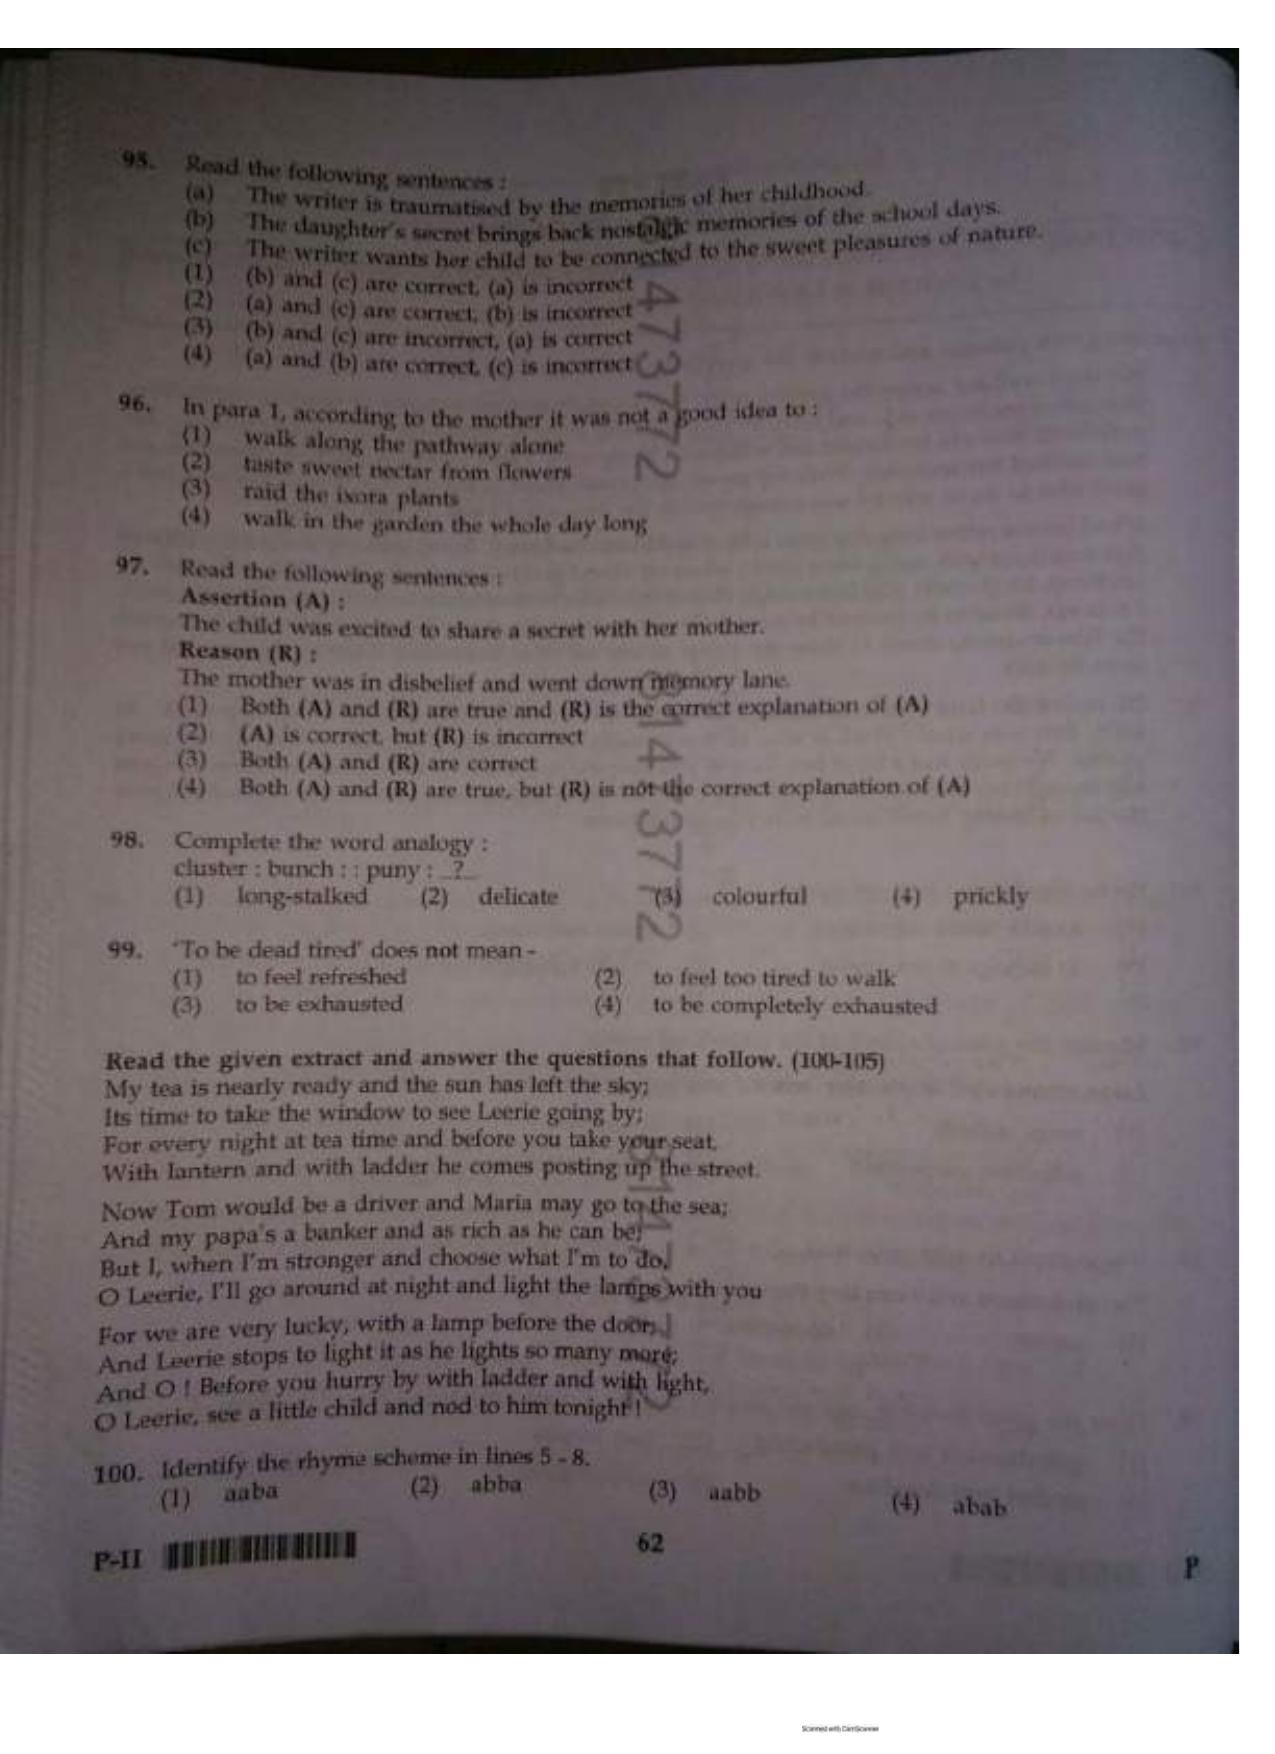 ctet paper 2 question paper SET P - Page 61